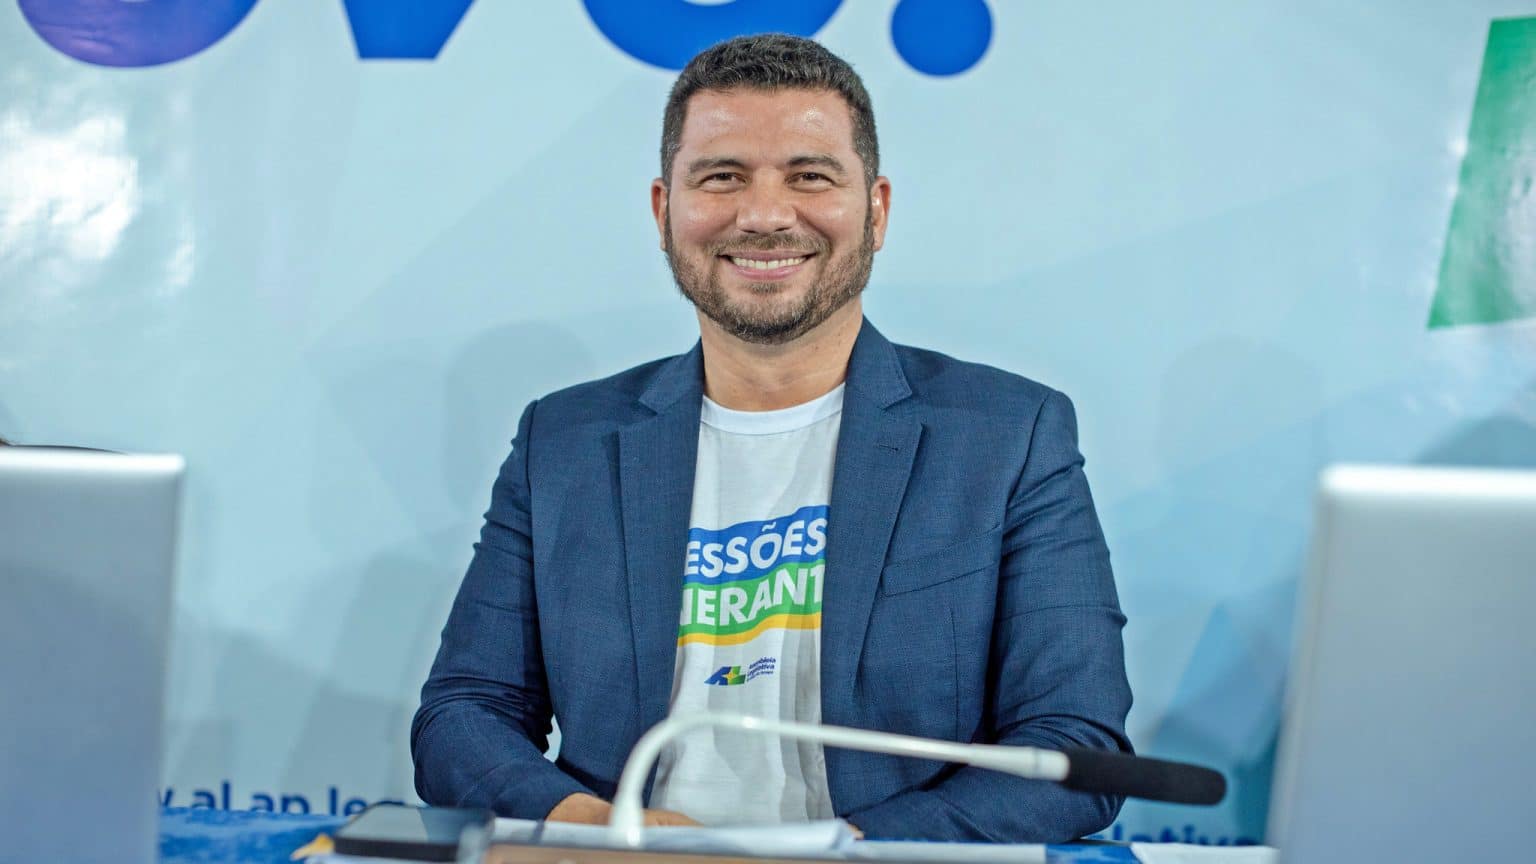 PDT confirma Jesus Pontes como pré-candidato à Prefeitura de Macapá